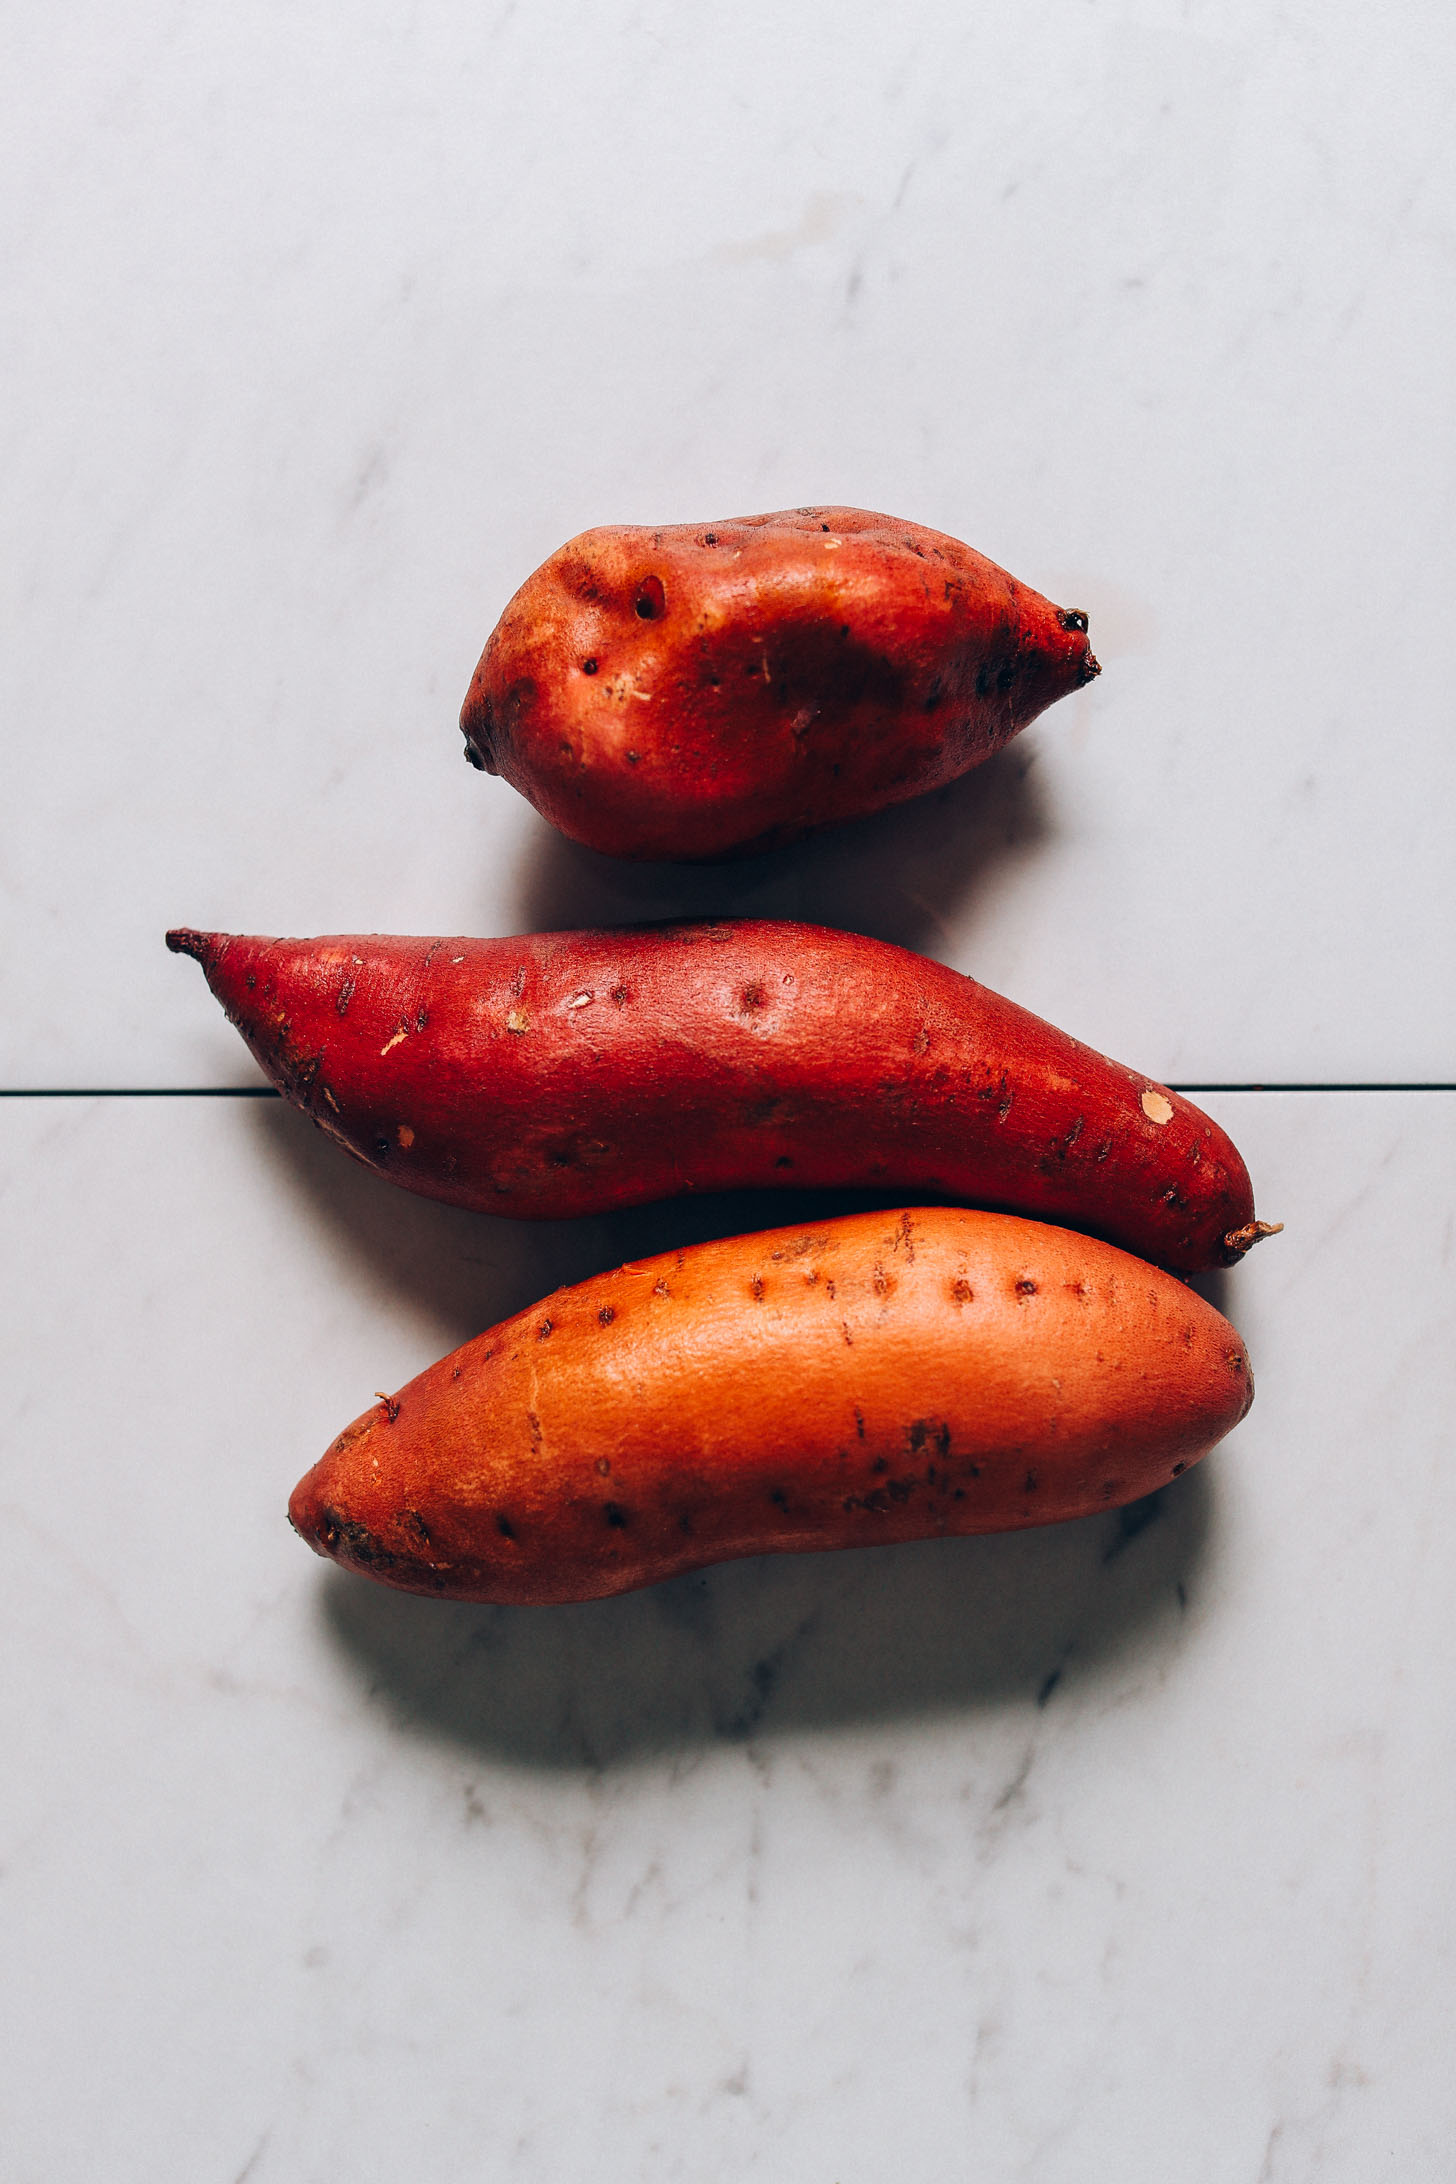 Sweet potatoes for making gluten-free vegan Sweet Potato Hashbrowns